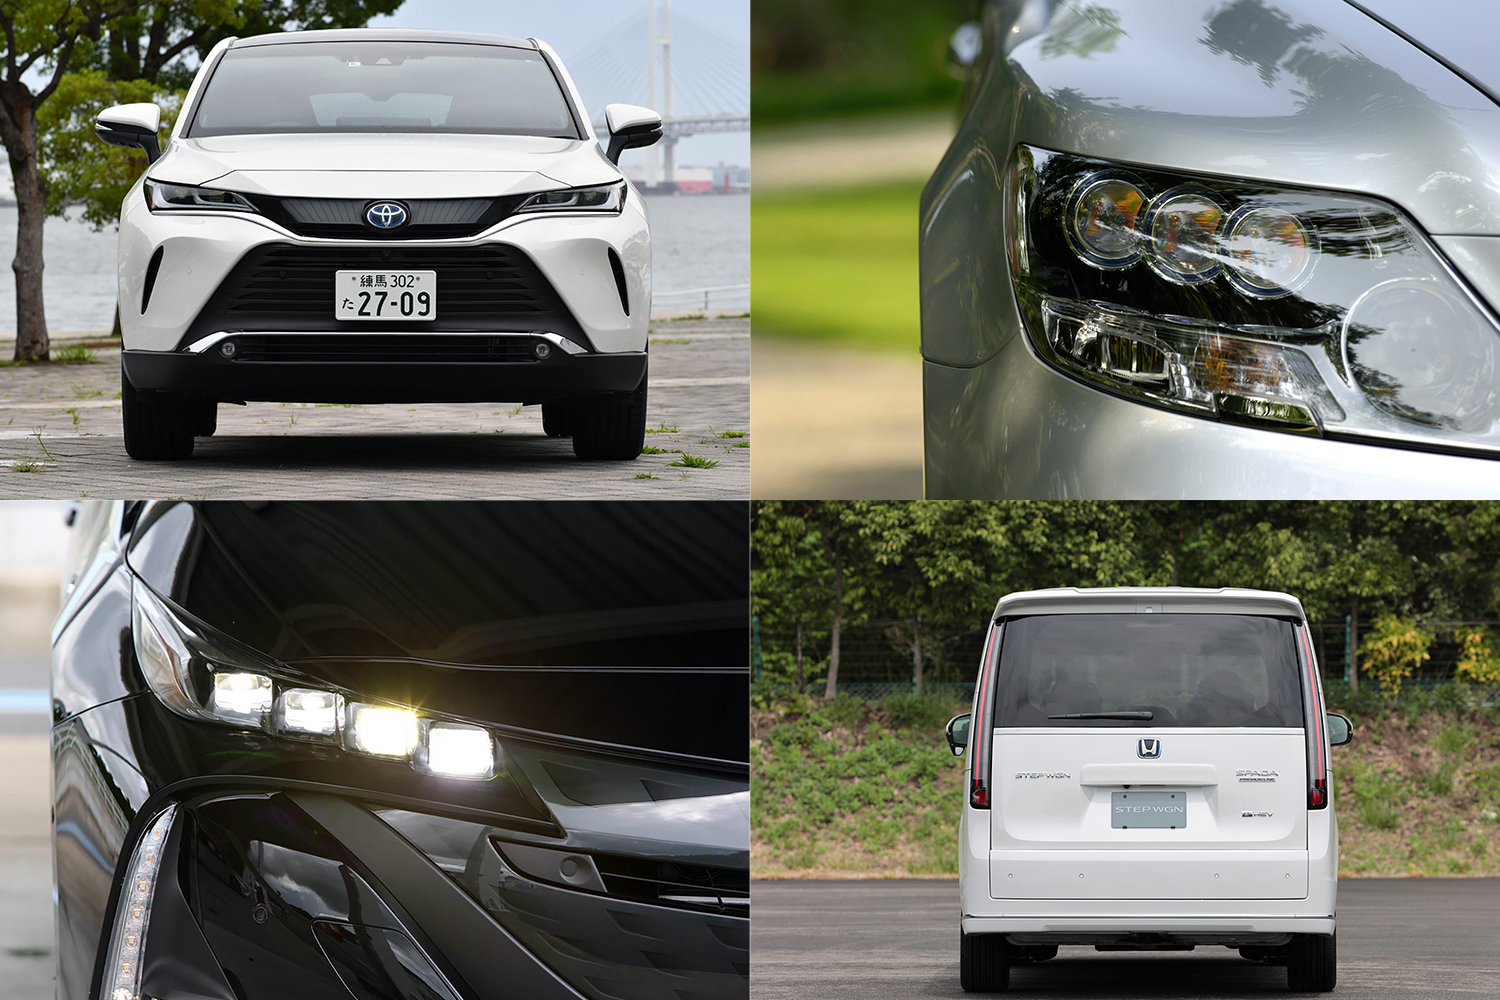 LEDヘッドライトが普及したことによるカーデザインの変化とは 〜 画像9